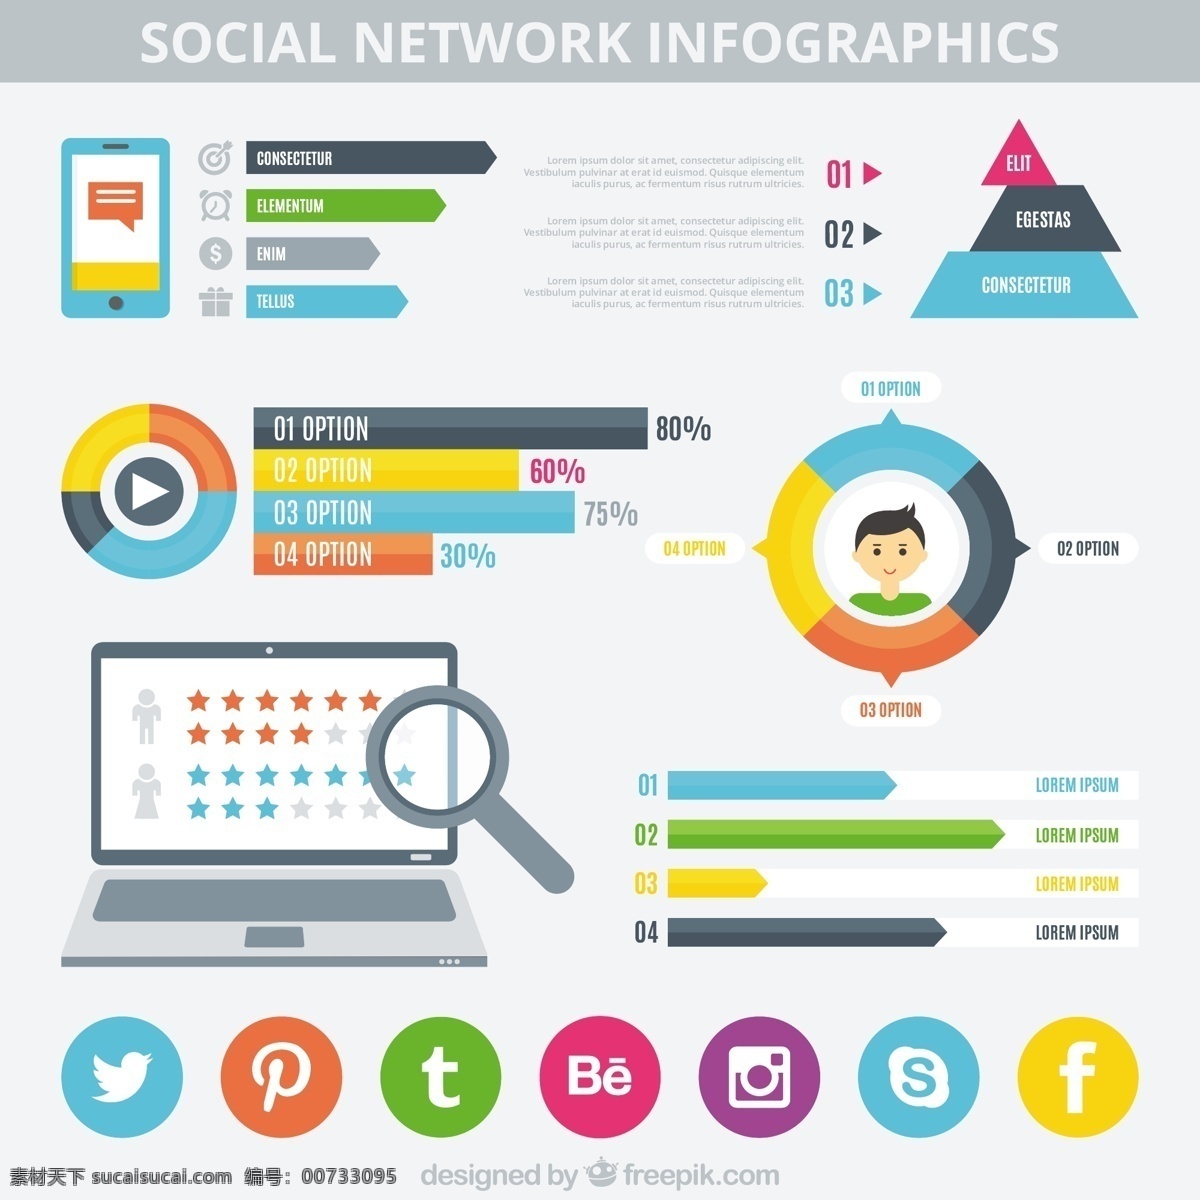 社会化 媒体 图 图表 商务 社交媒体 技术 模板 网页 社交 网络 营销一样 网站 图形 接触 交流 信息 列表 网站模板